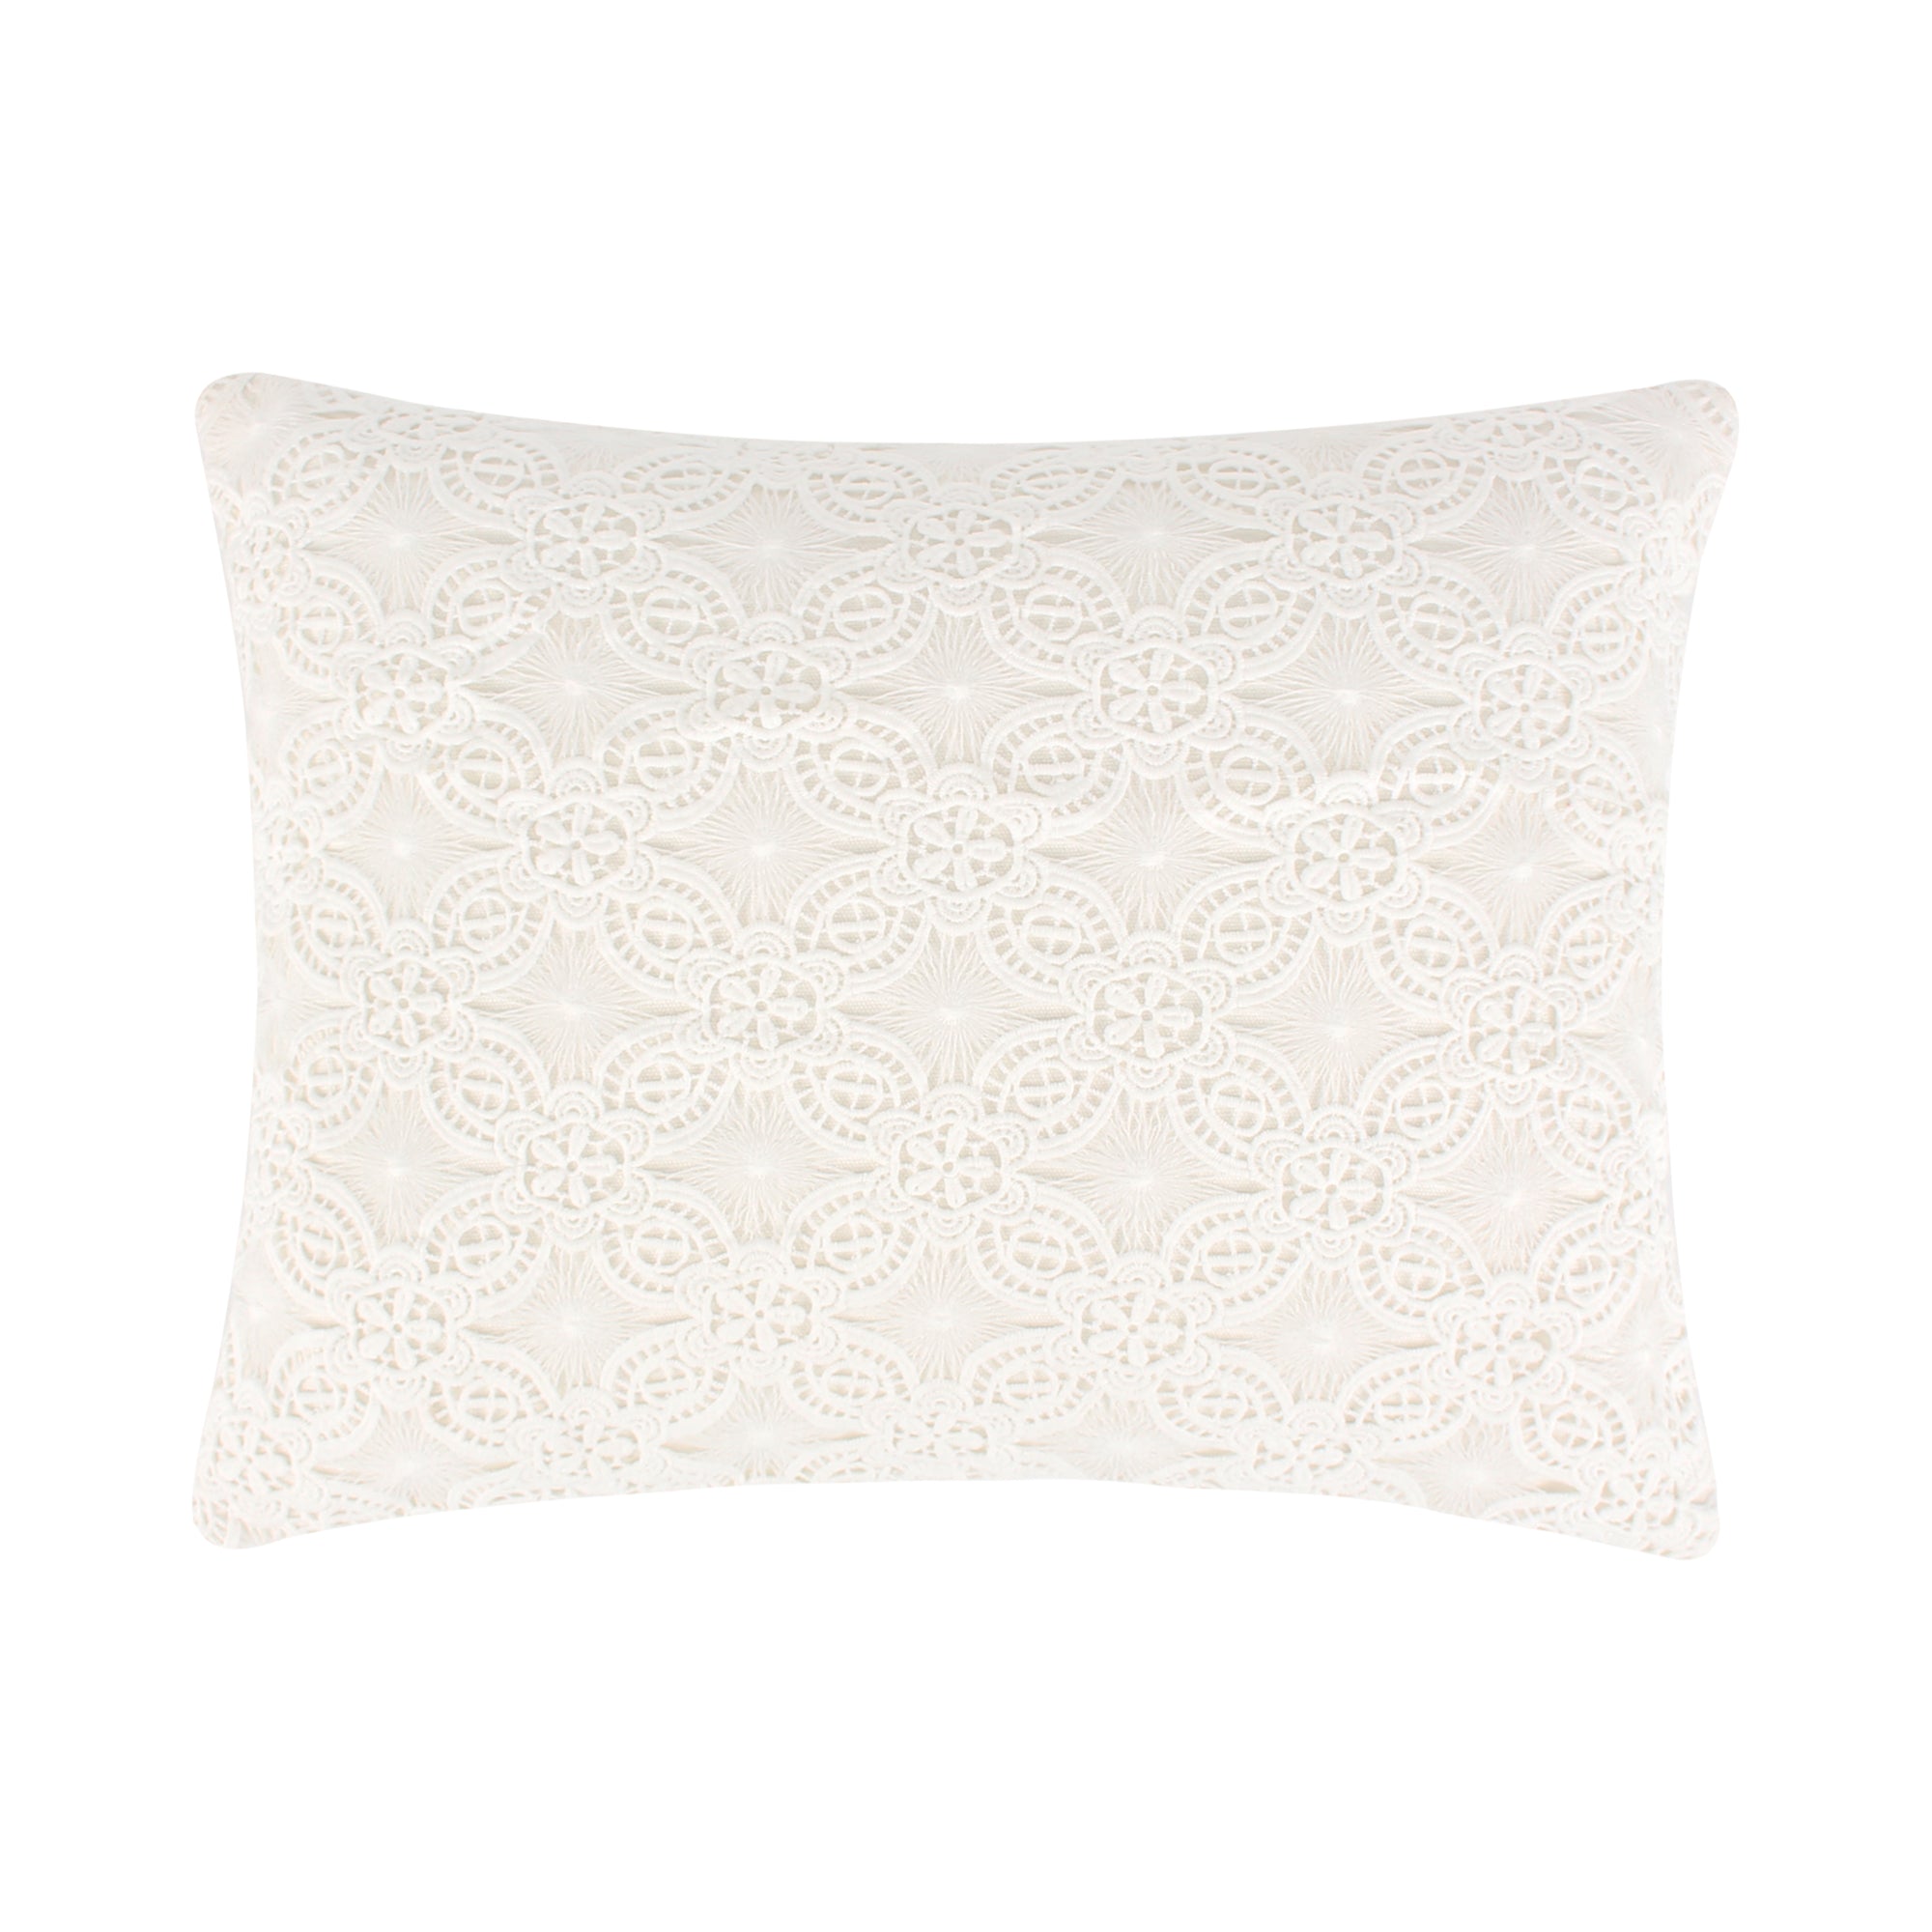 Leonora Floral Lace Pillow